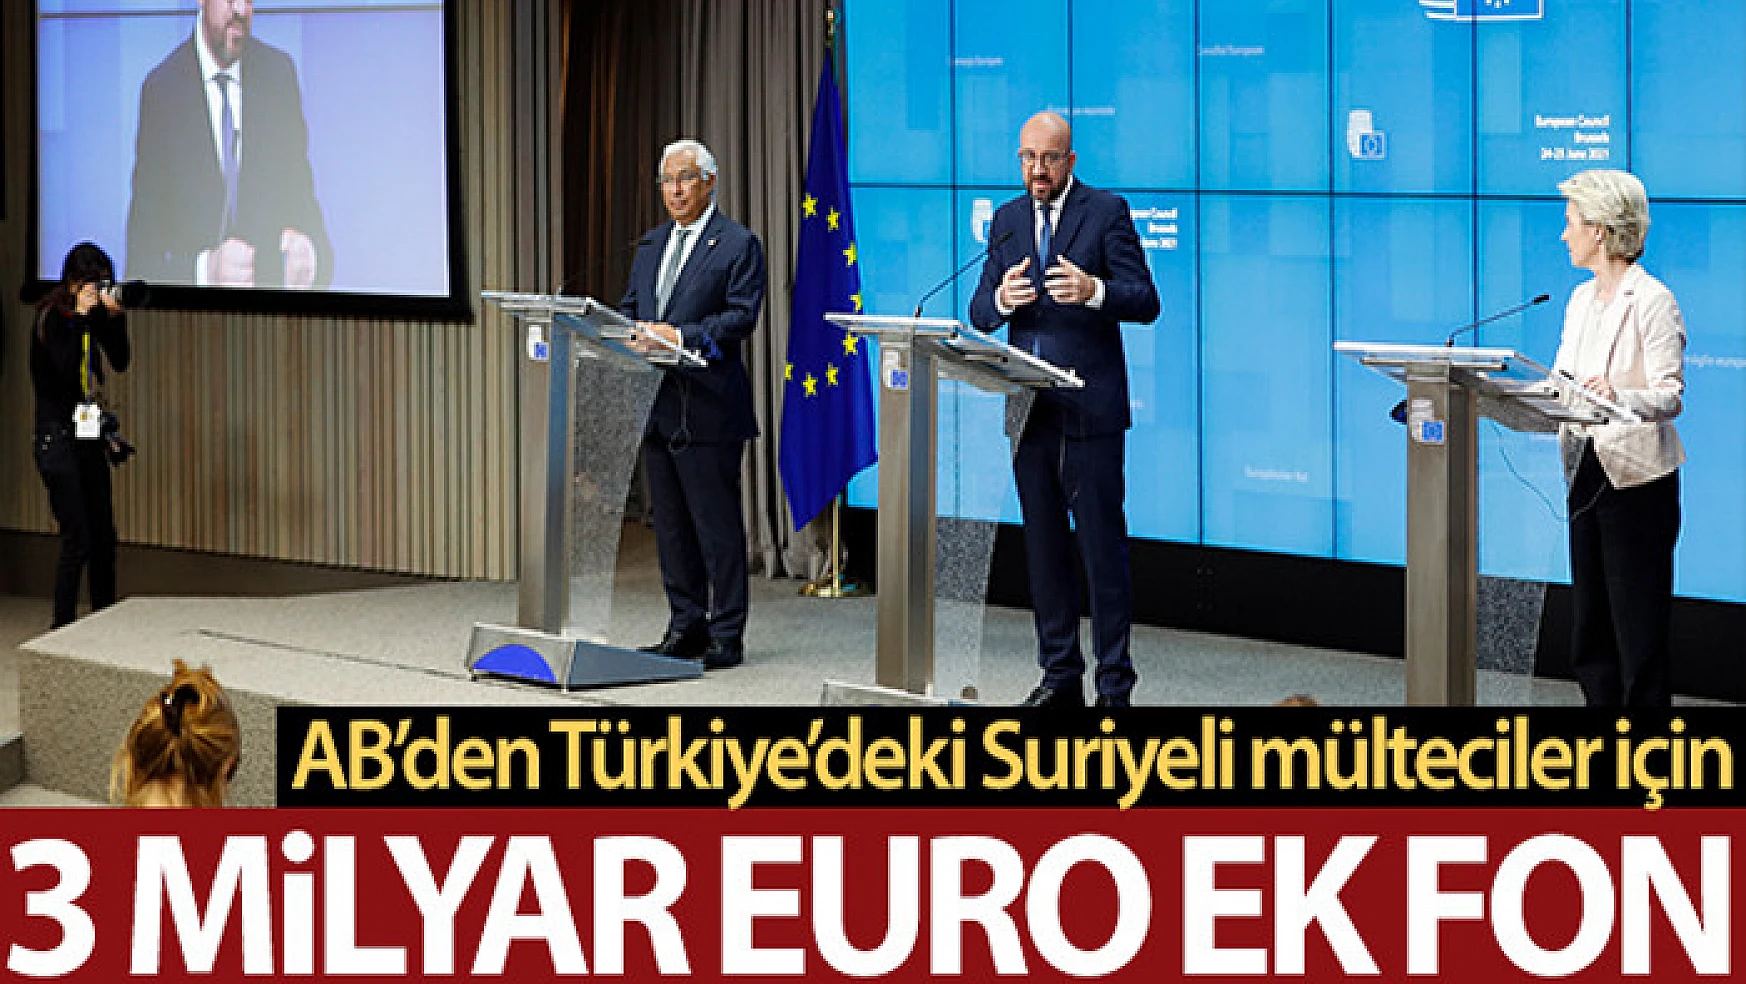 AB'den Türkiye'deki Suriyeli mülteciler için 3 milyar Euro ek fon